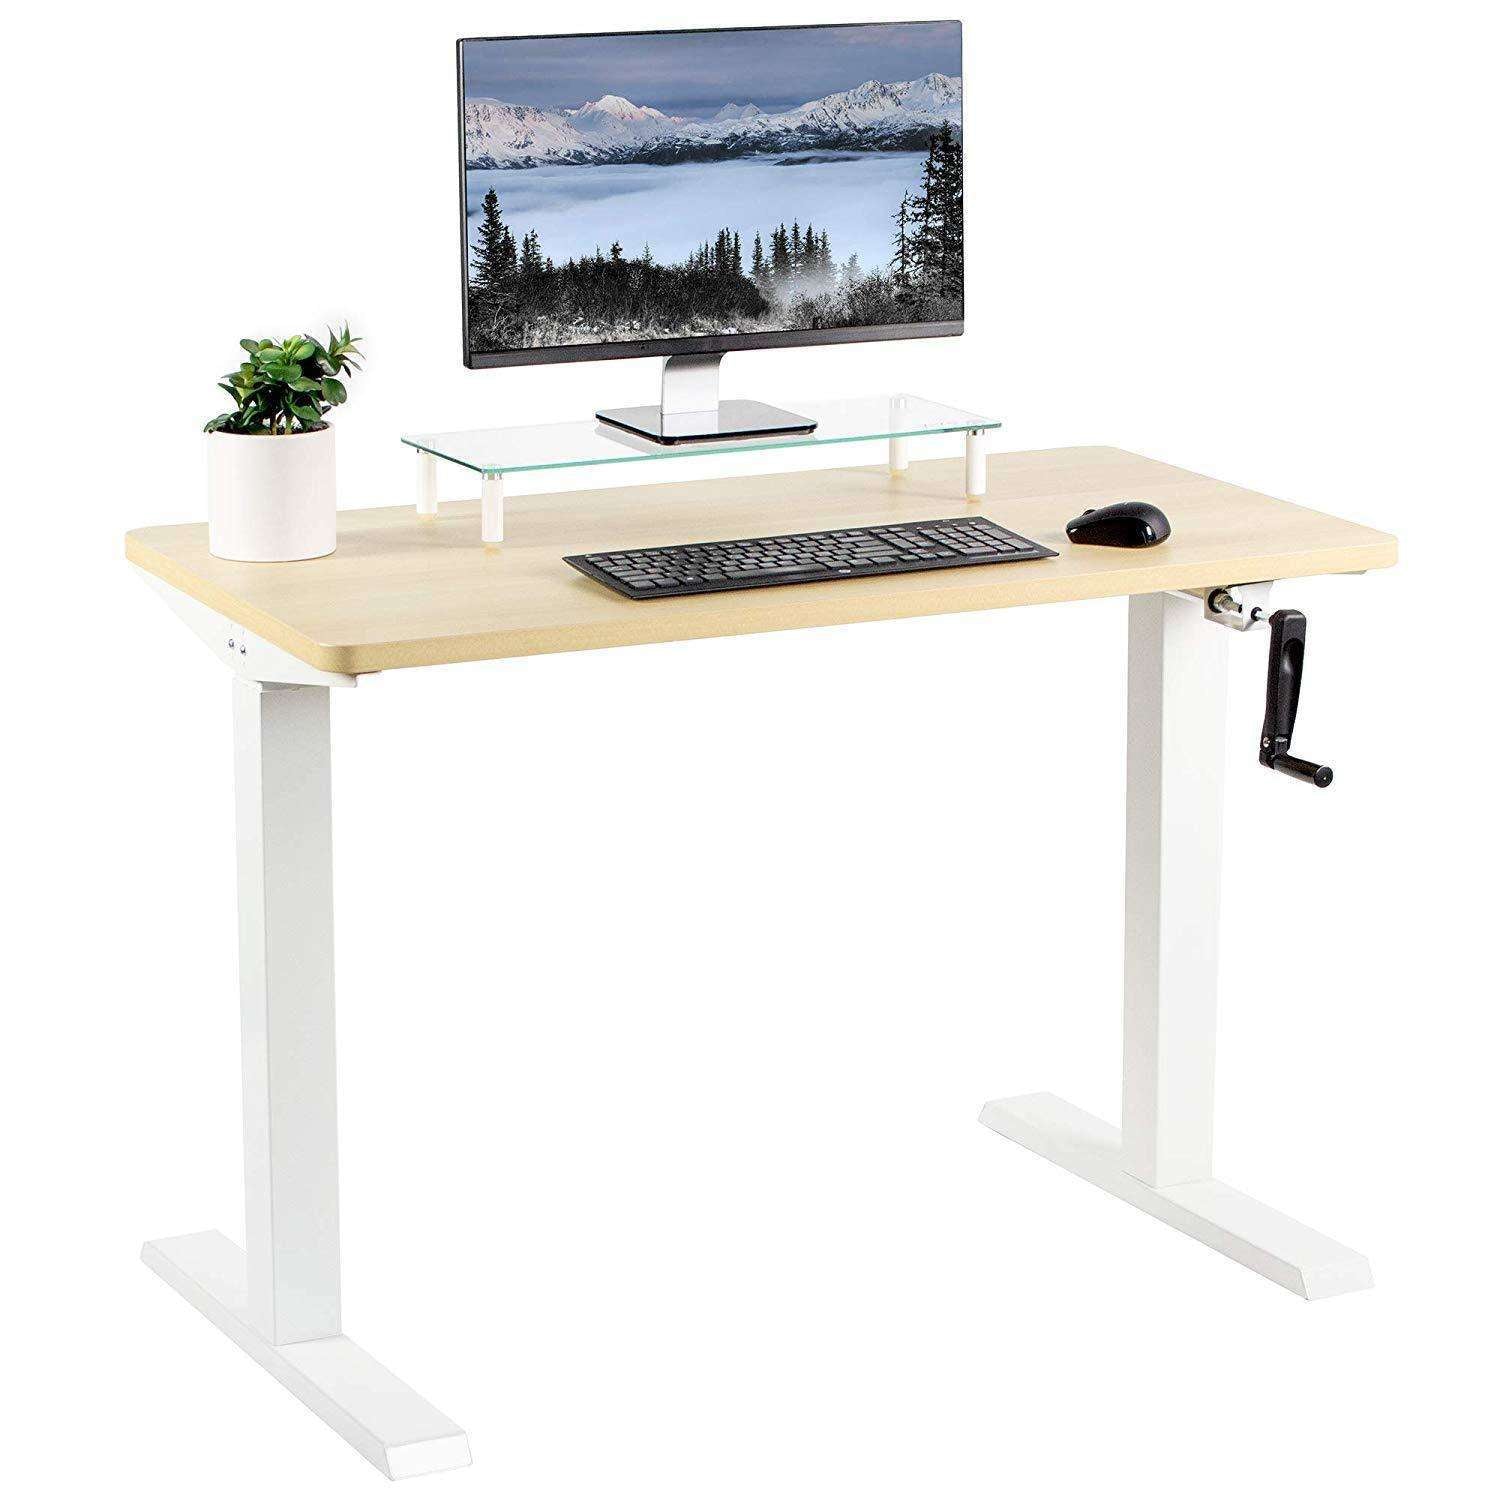 Standing Desks - The Best Adjustable Height Desks - Progressive